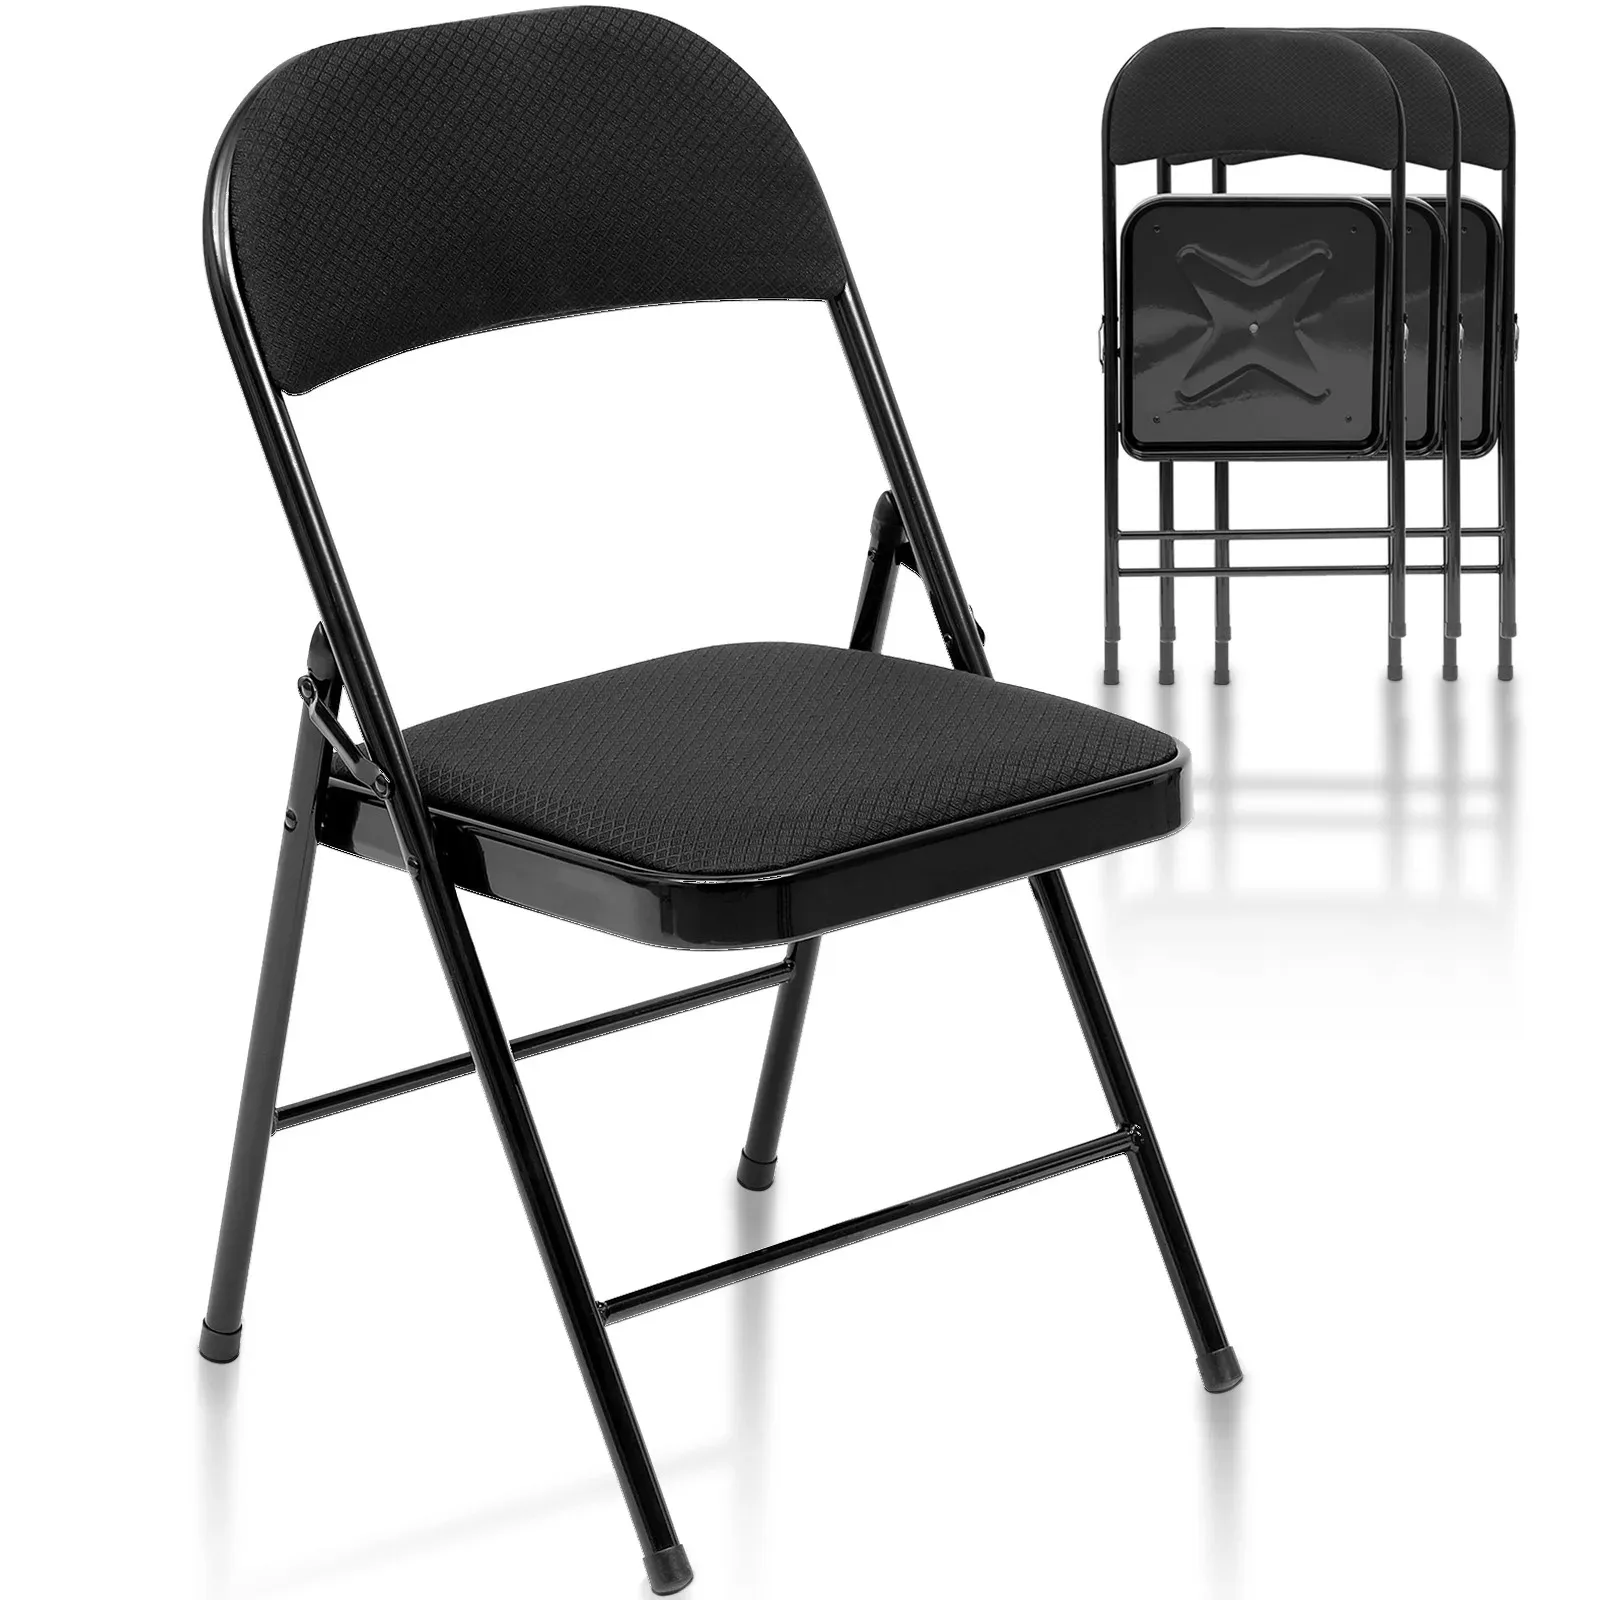 

Набор складных стульев из 4 тканевых чехлов, складные стулья черного цвета